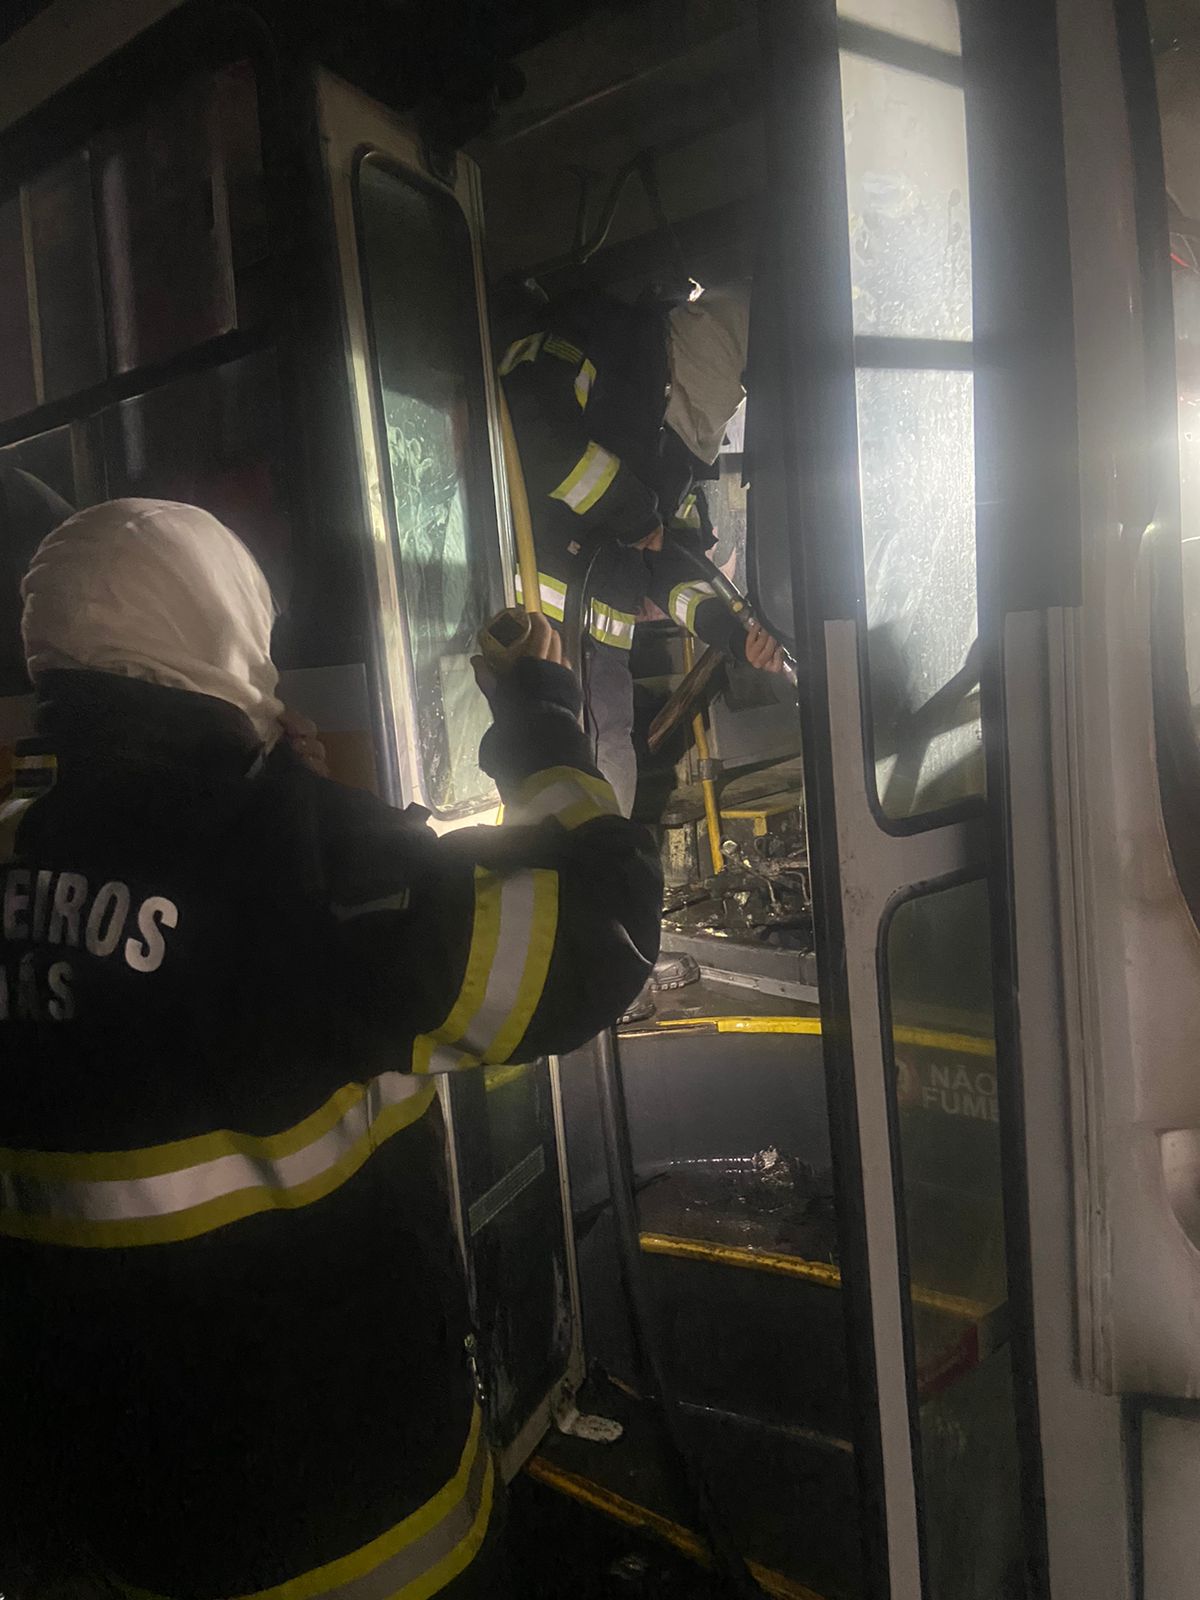 Corpo de Bombeiros Militar de Goiás controla incêndio em ônibus escolar sem vítimas. Foto: Reprodução CMBGO